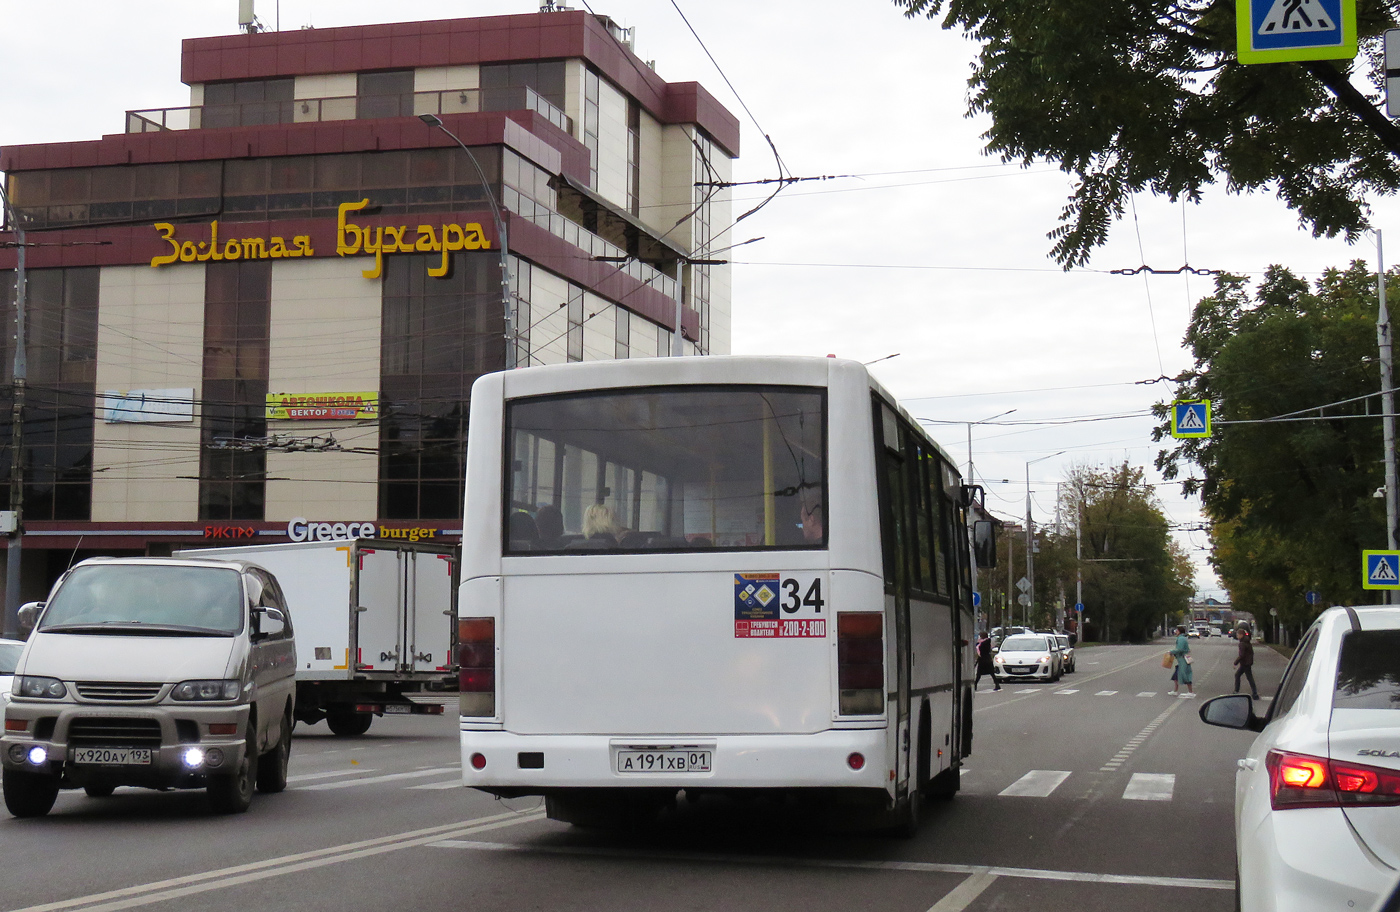 Krasnodar region, PAZ-320402-05 Nr. А 191 ХВ 01